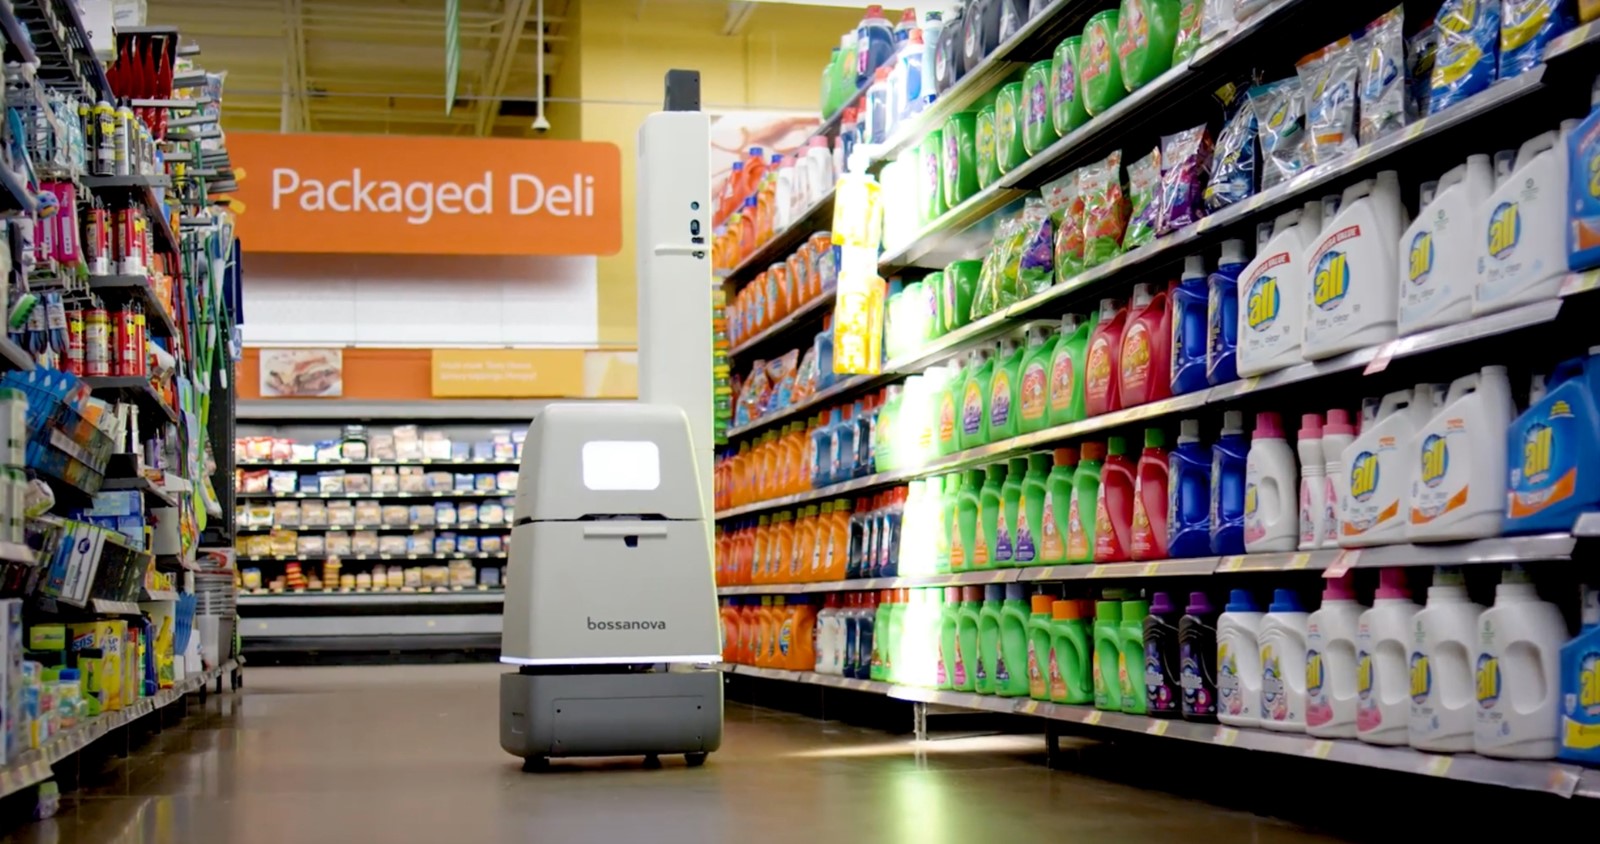 Walmart odustao od robotizacije praćenja inventara u svojim trgovinama -  Robotika @ Bug.hr